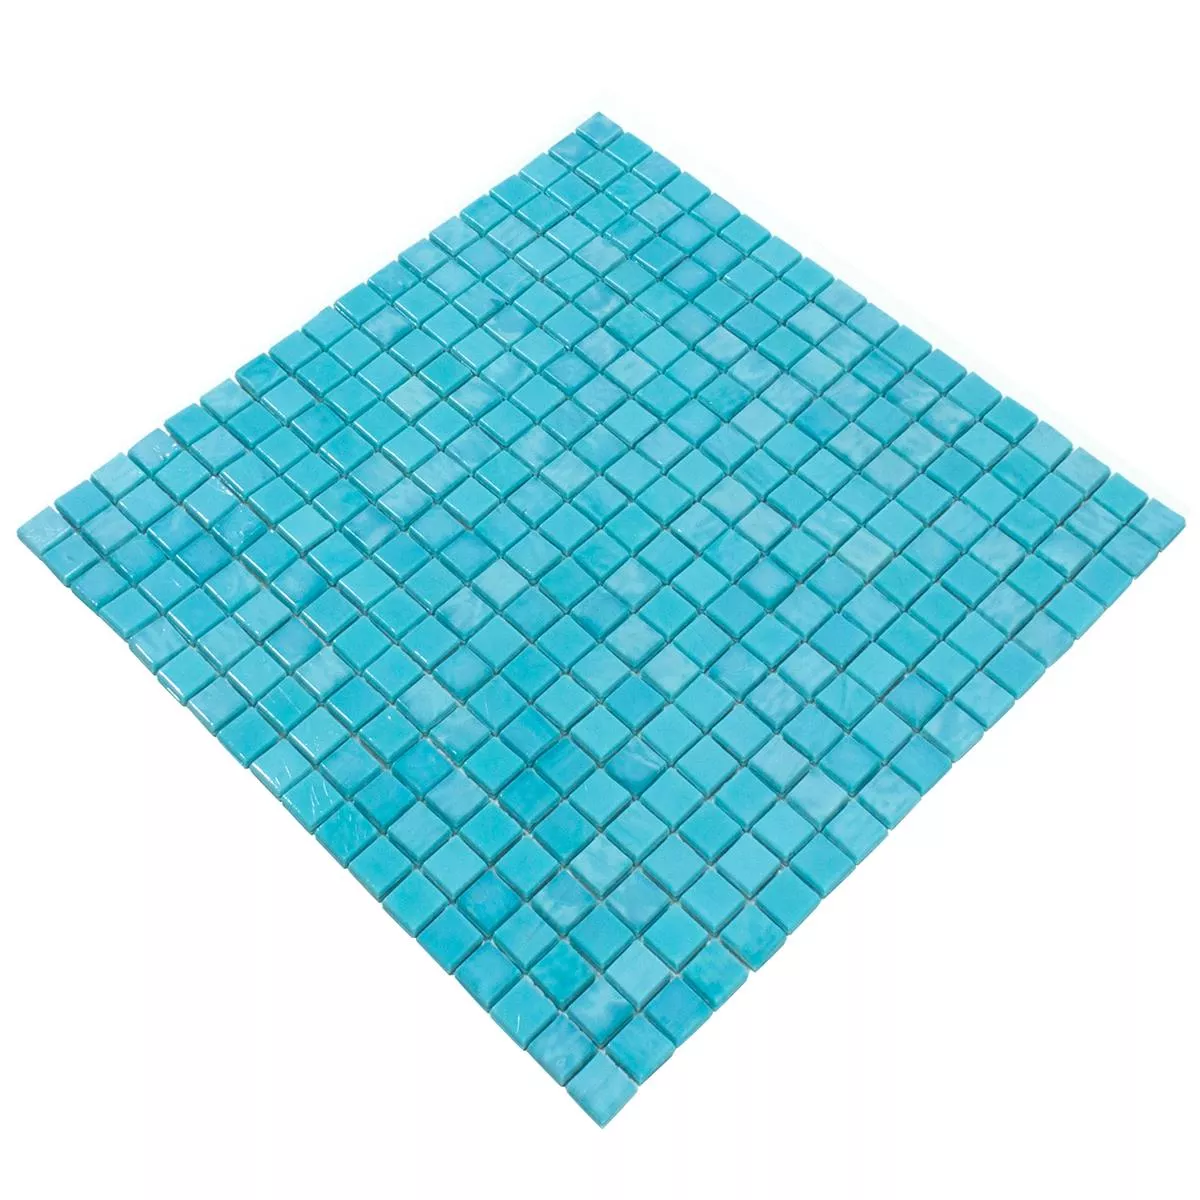 Sample Glass Mosaic Tiles Seaside Cyan